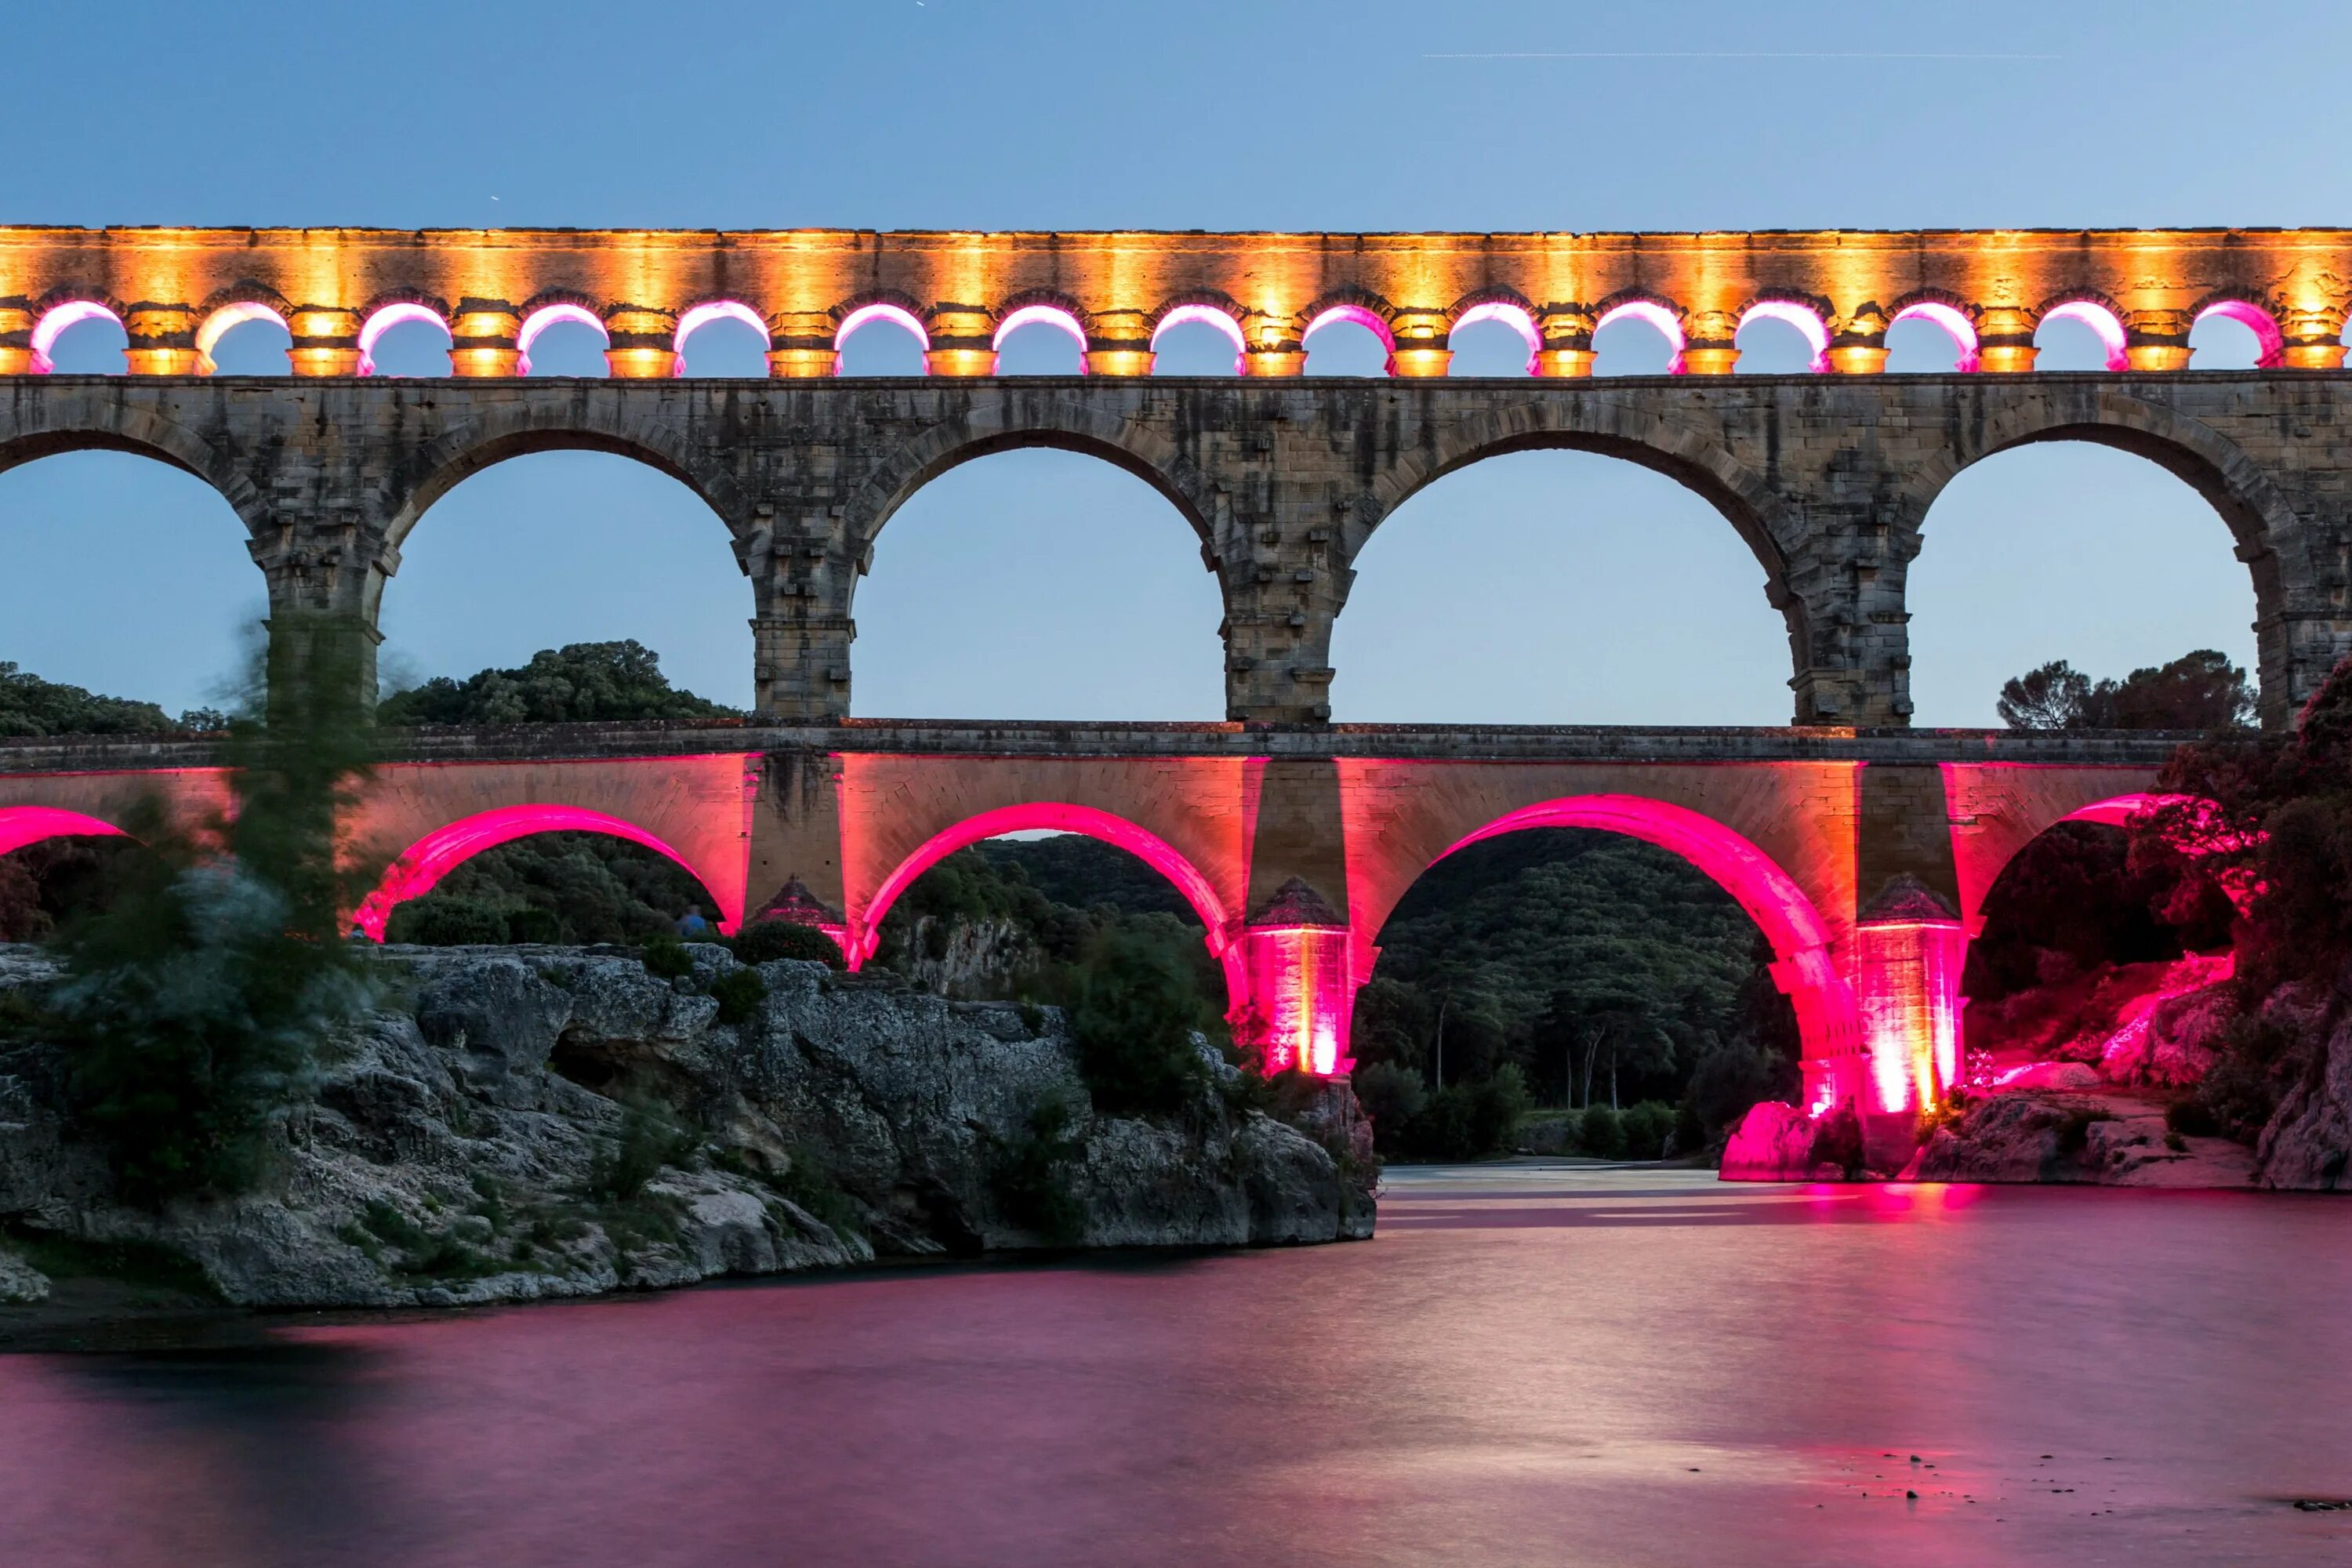 Пон вид. Акведук Пон-дю-гар. Мост Пон дю гар во Франции. Римский акведук во Франции. Пон-дю-гар Римский акведук.